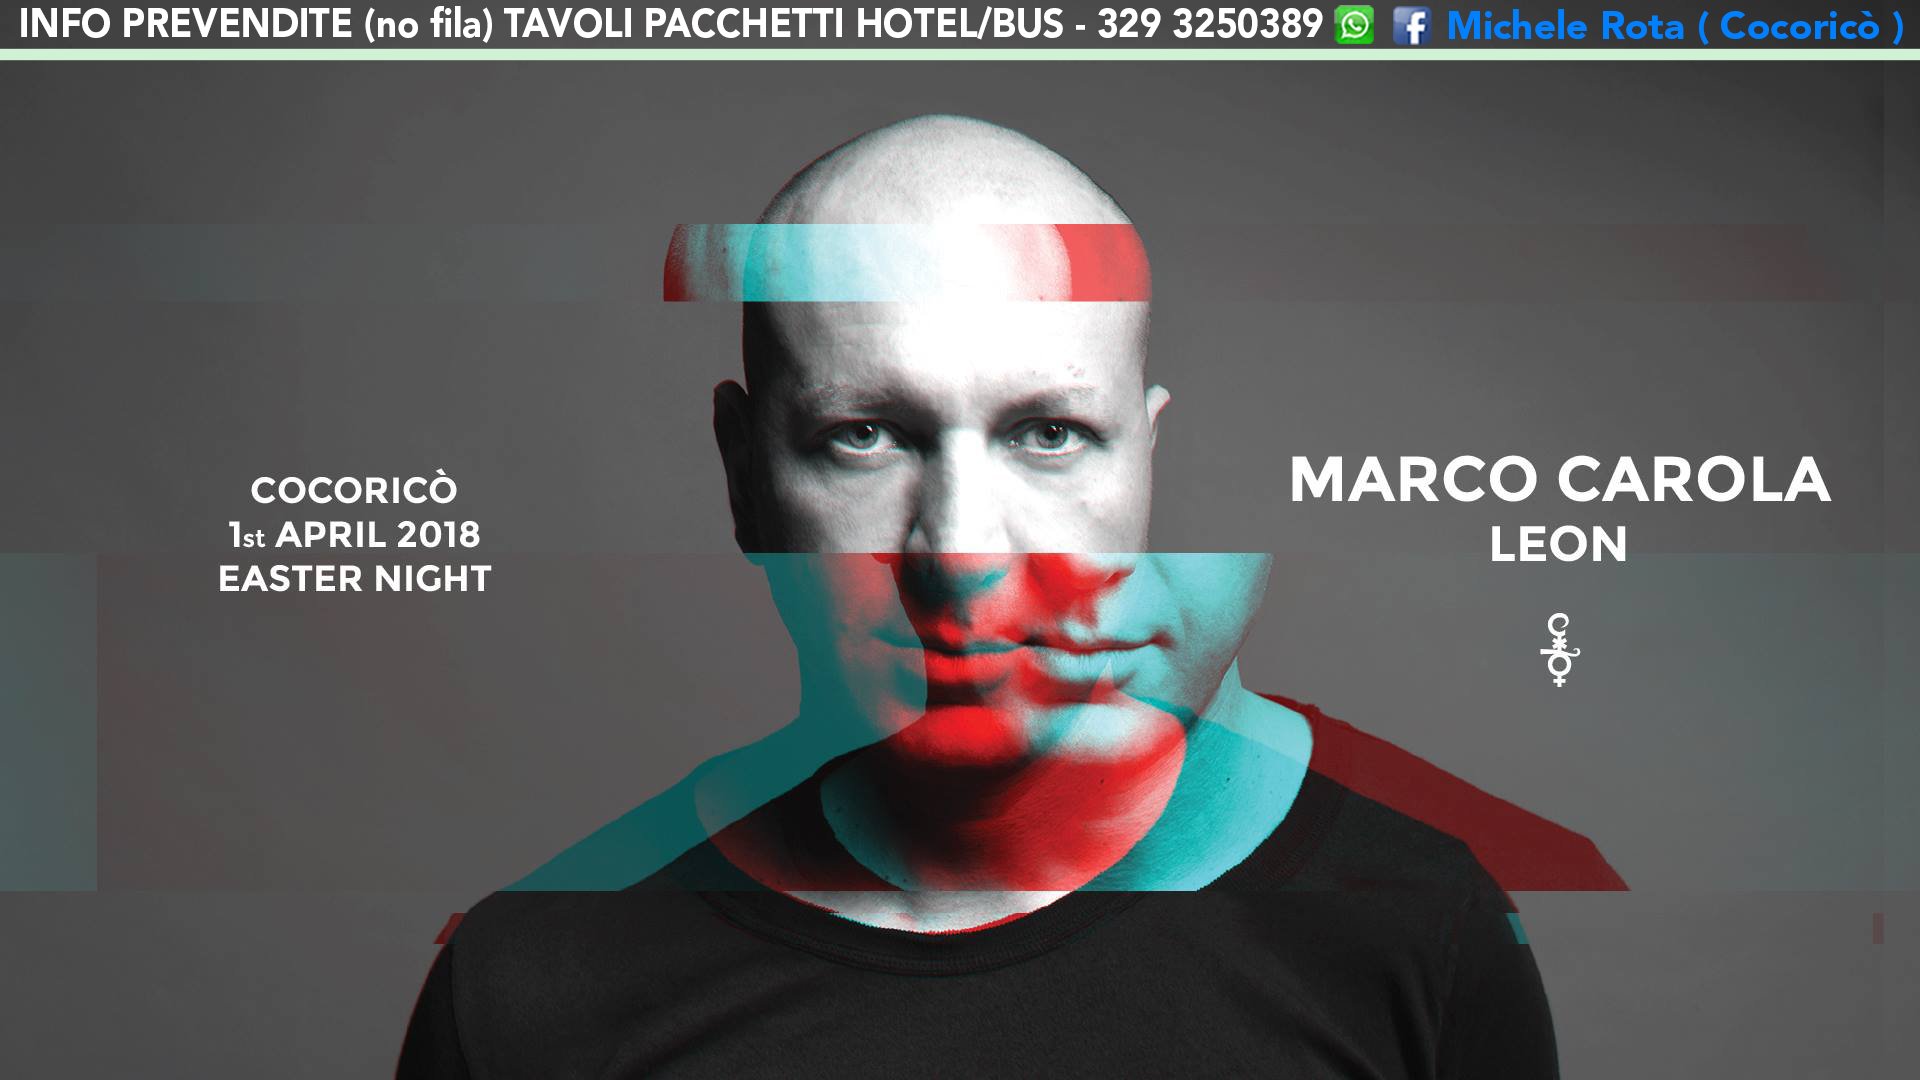 Marco Carola Cocorico Pasqua 2018 Ticket Prevendite Tavoli